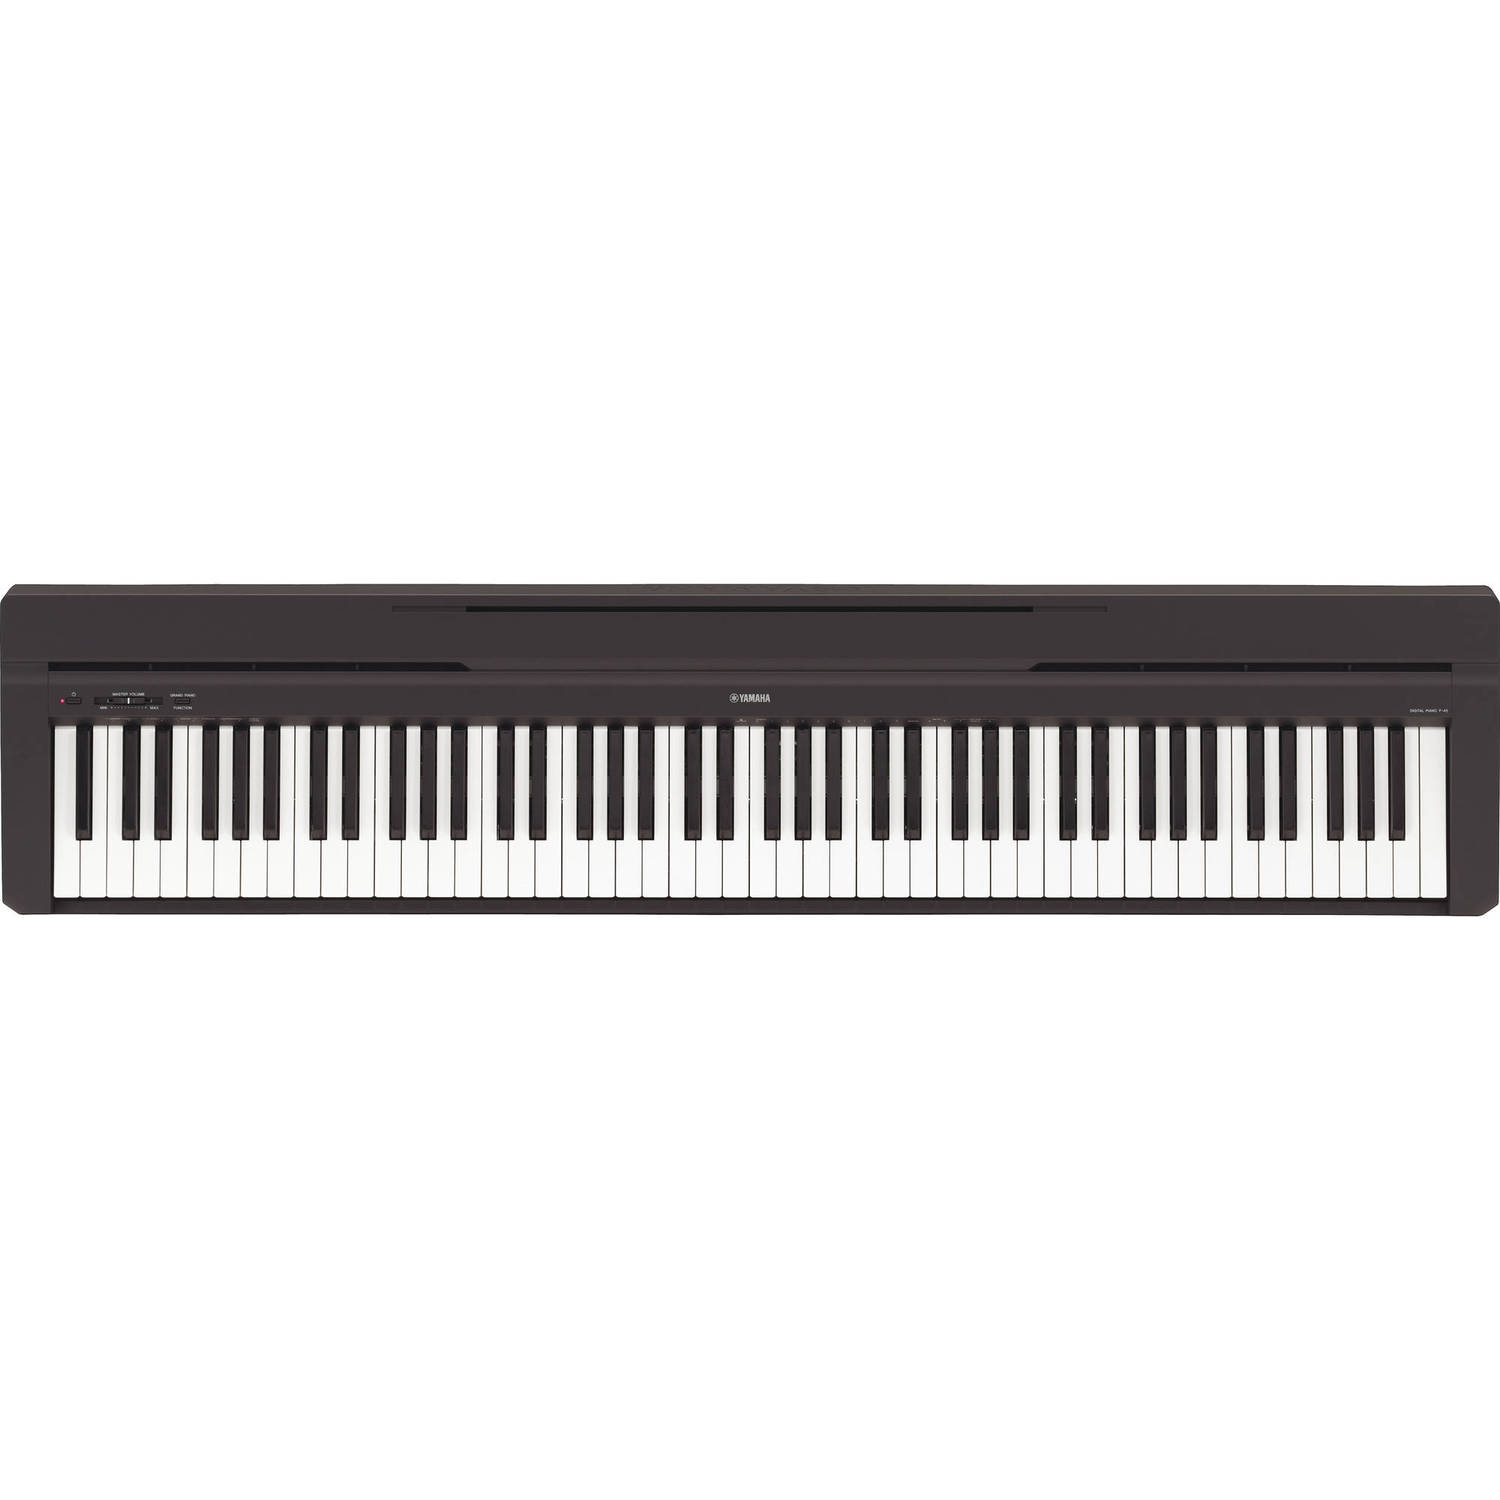 Piano Digital Portátil Yamaha P 45 de 88 Teclas Compacto Incluye Fuente de Alimentación Pa150